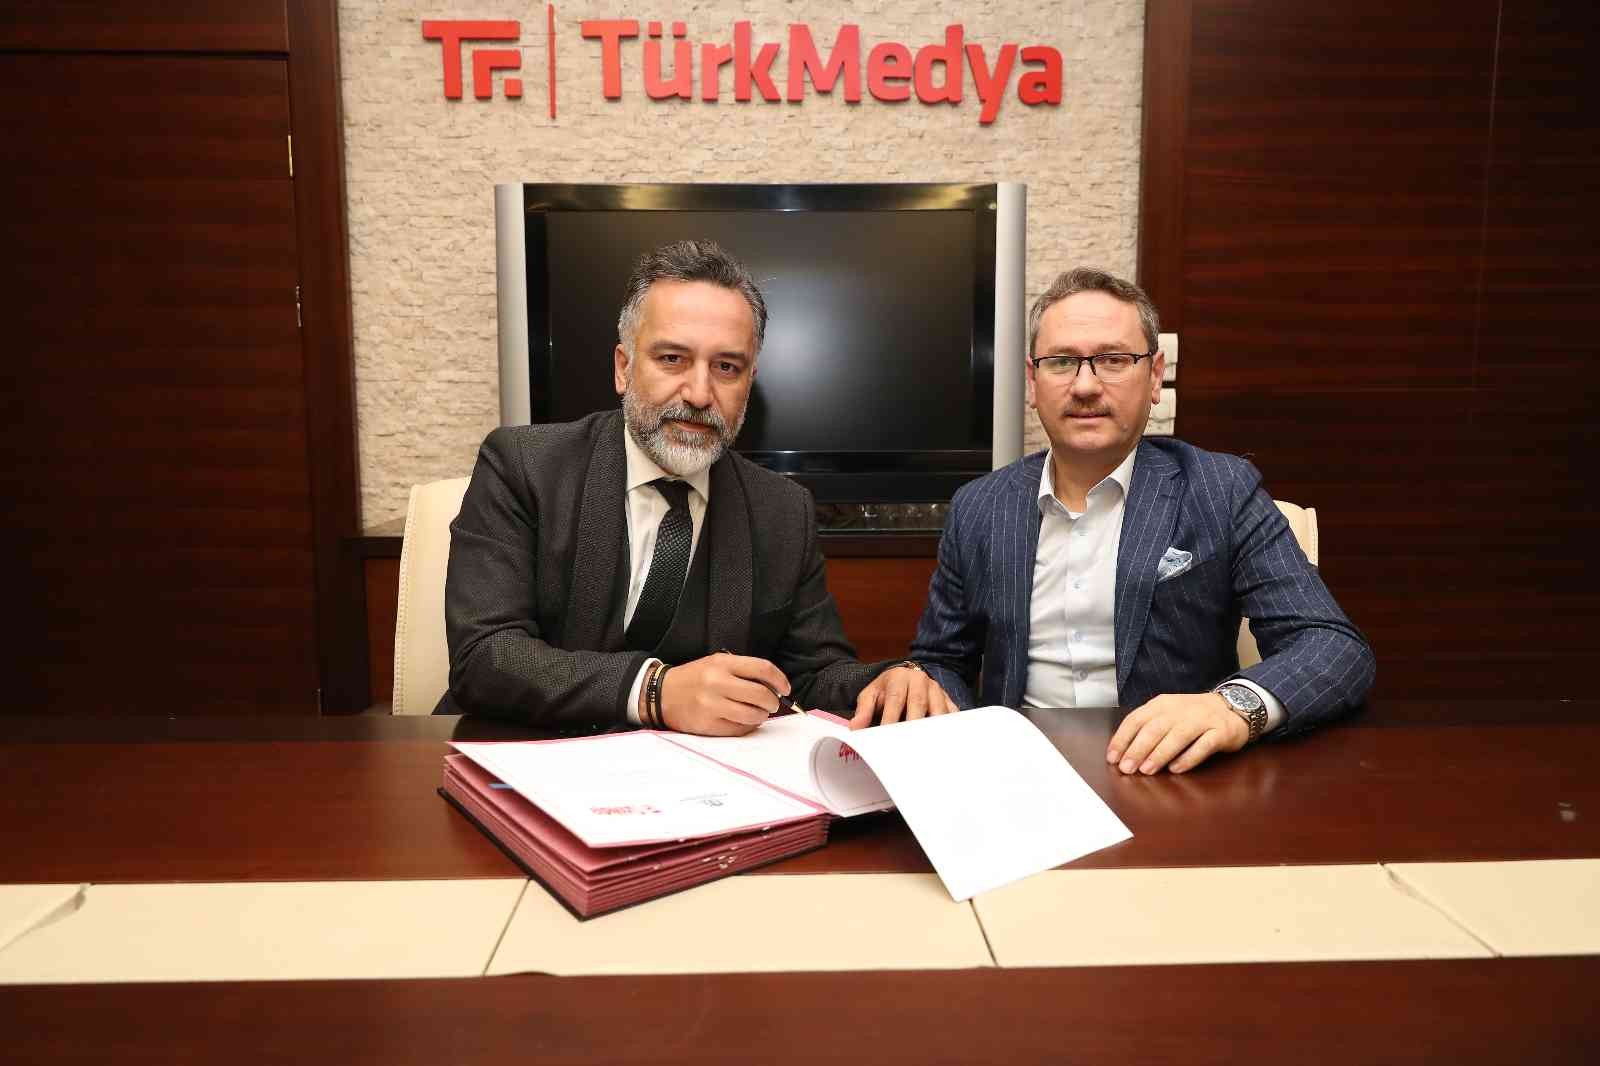 Başakşehir’in “5 yıldızlı” akademisi Yeni Medya Akademi’de yeni bir dönem başladı. Başakşehir Belediyesi ve medya sektörünün köklü şirketlerinden ...